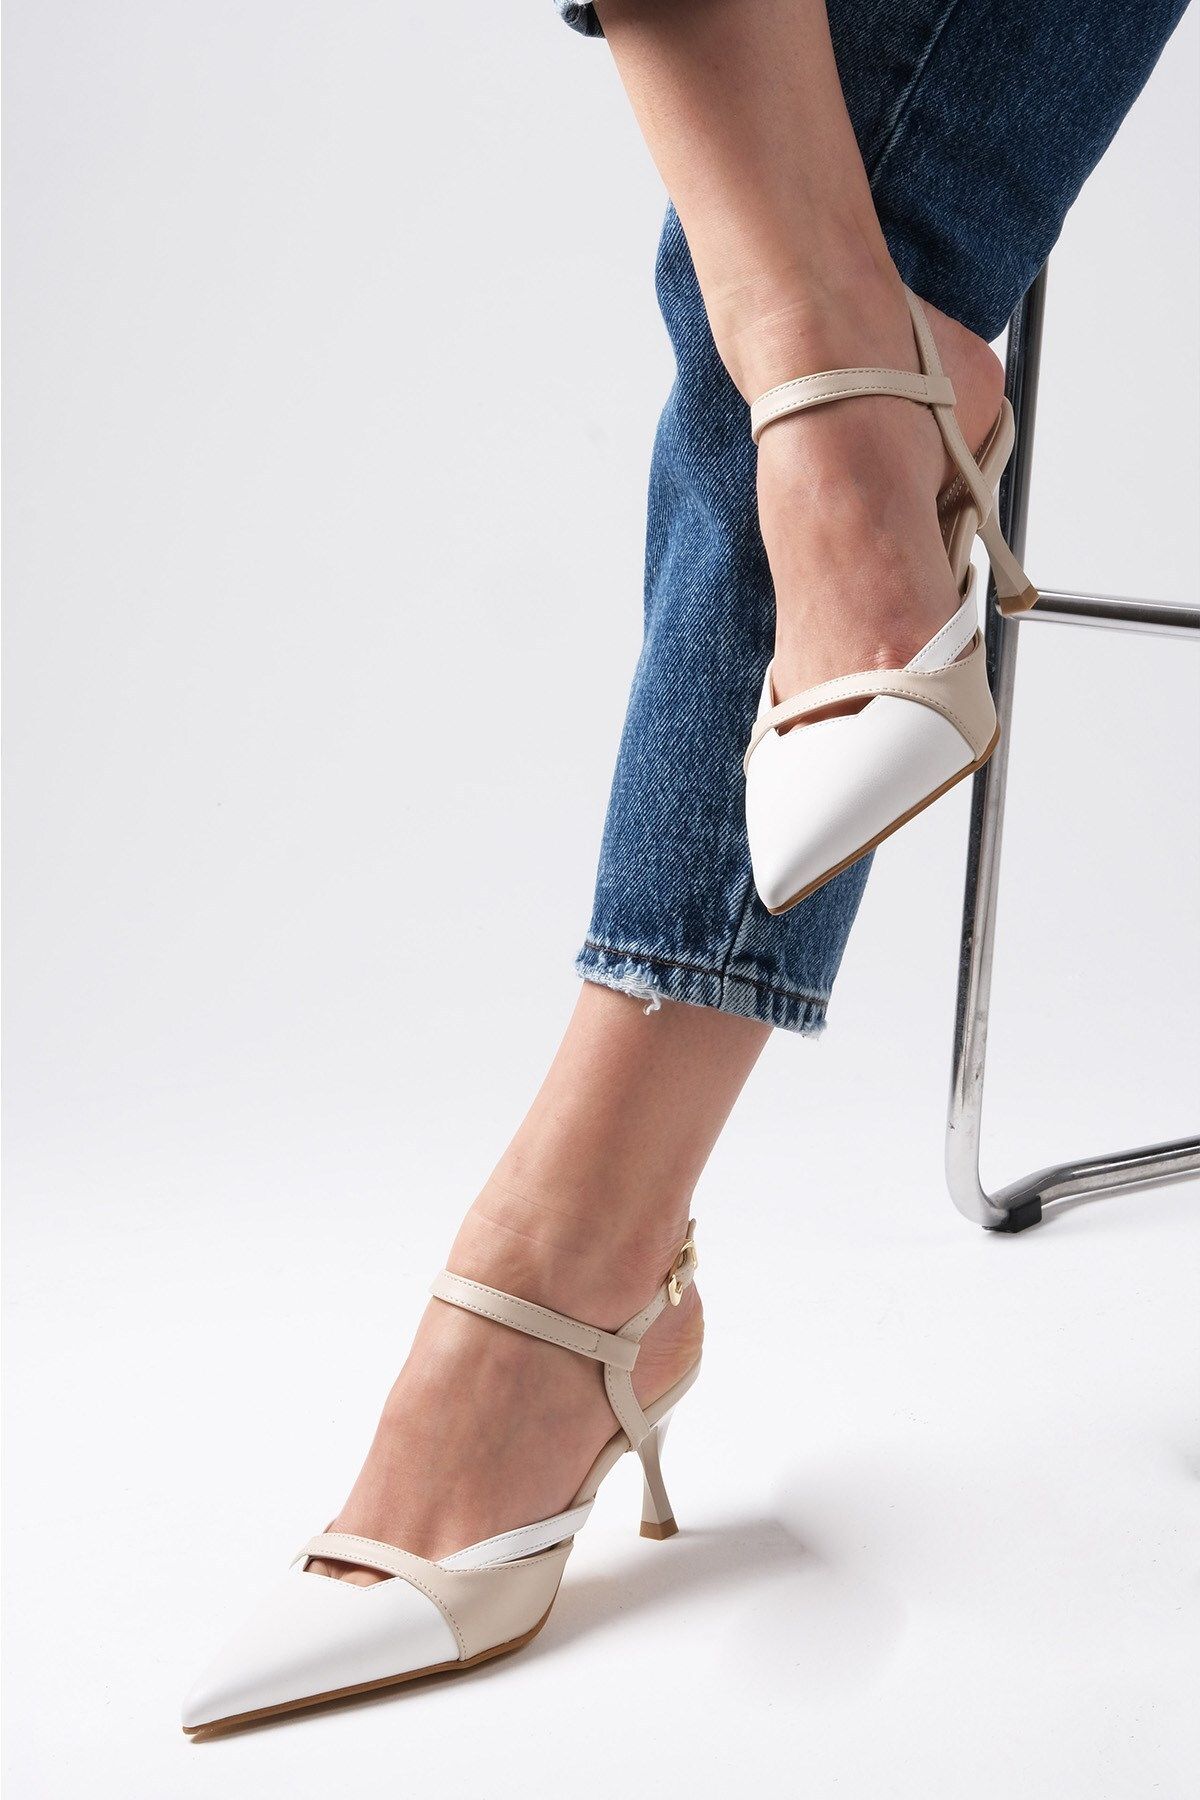 Mio Gusto Patsy Beyaz Ve Bej Renk Arkası Açık Kadın Topuklu Ayakkabı